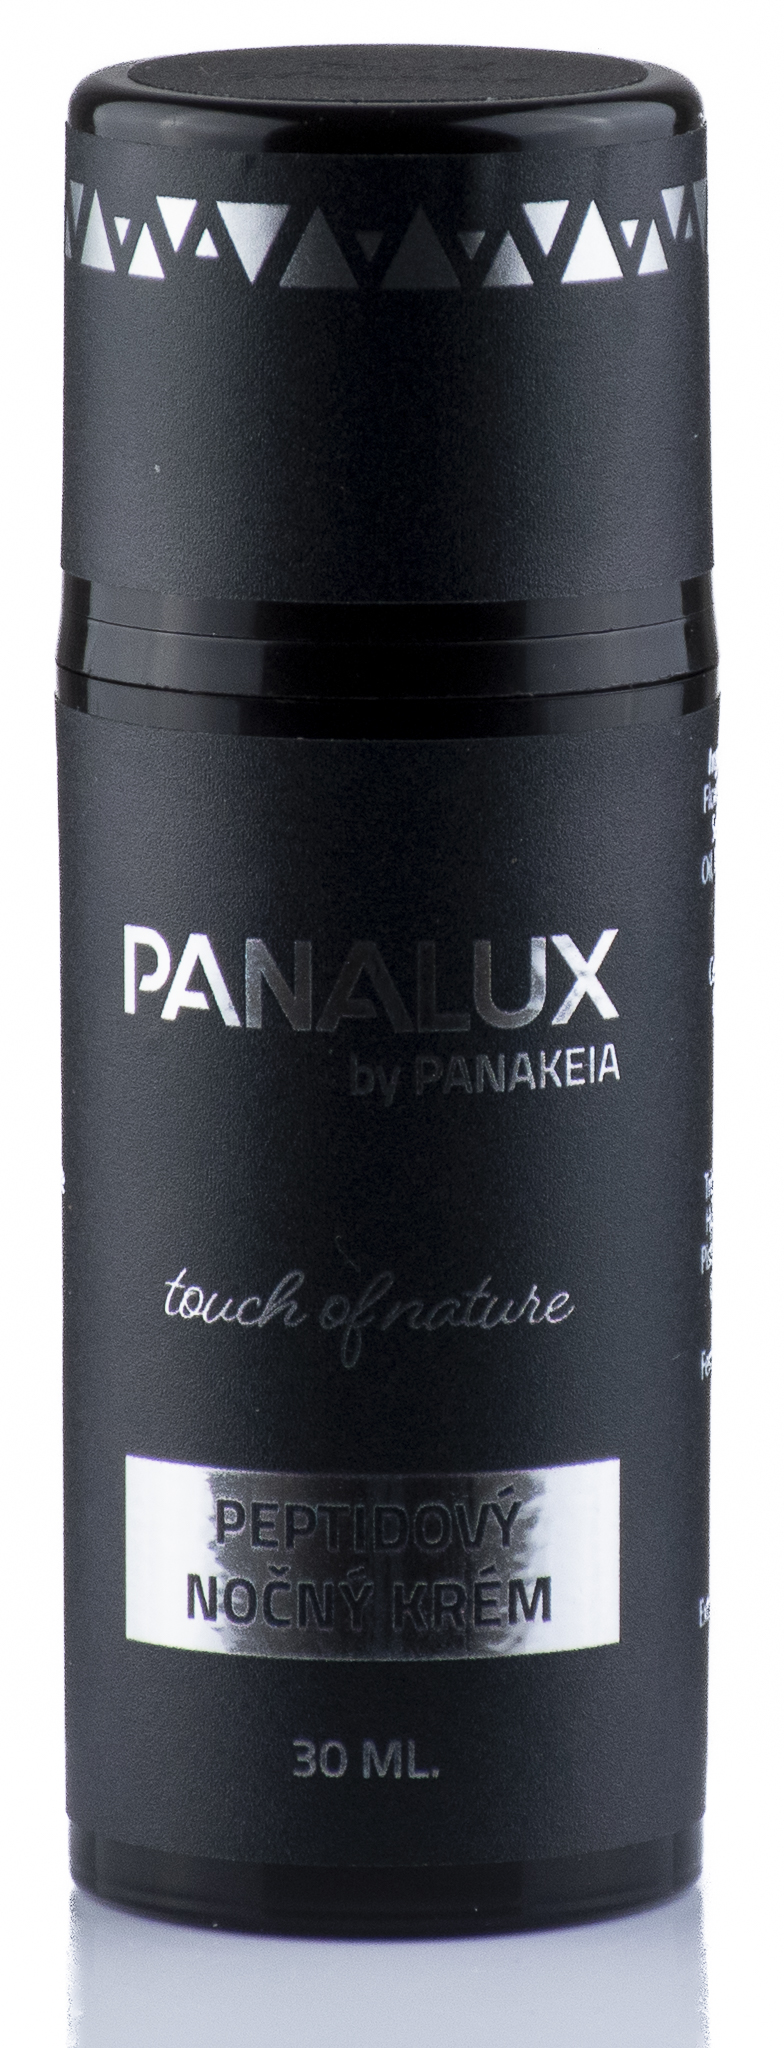 PANALUX by PANAKEIA Peptidový nočný krém 30ml